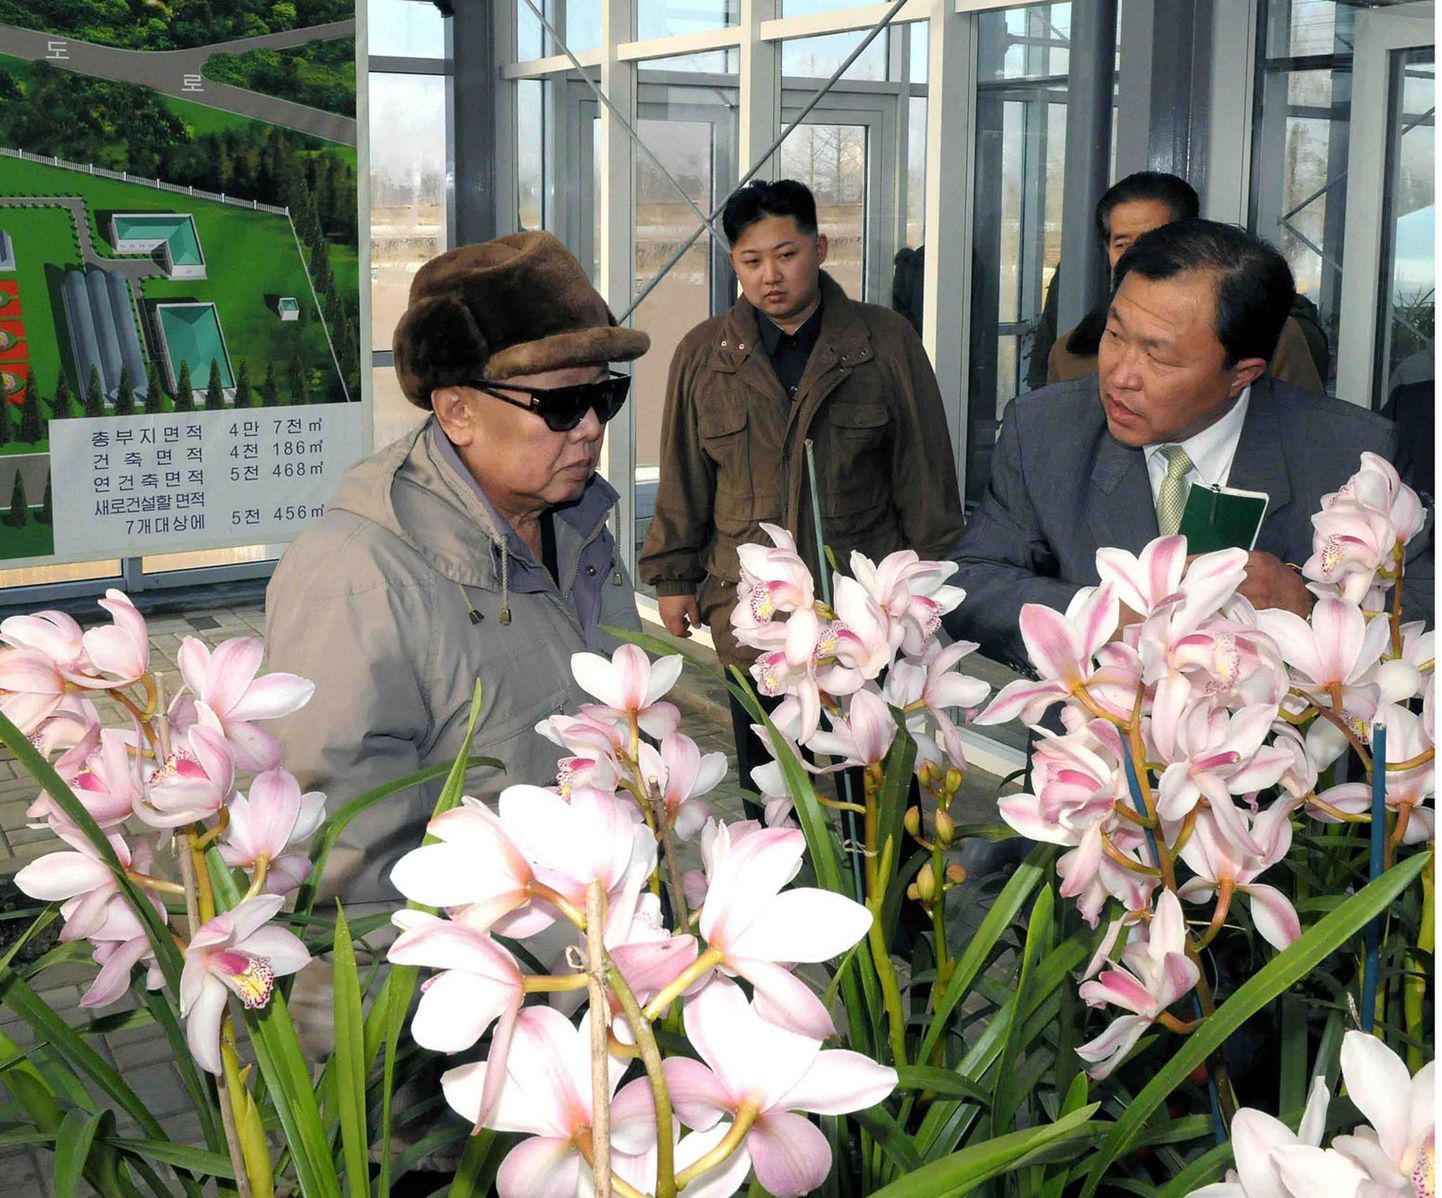 Põhja-Korea liider Kim Jong-il (vasakul) koos oma poja Kim Jong-uniga (keskel) Pyongyangis lillekasvatuse uurimisinstituudis.